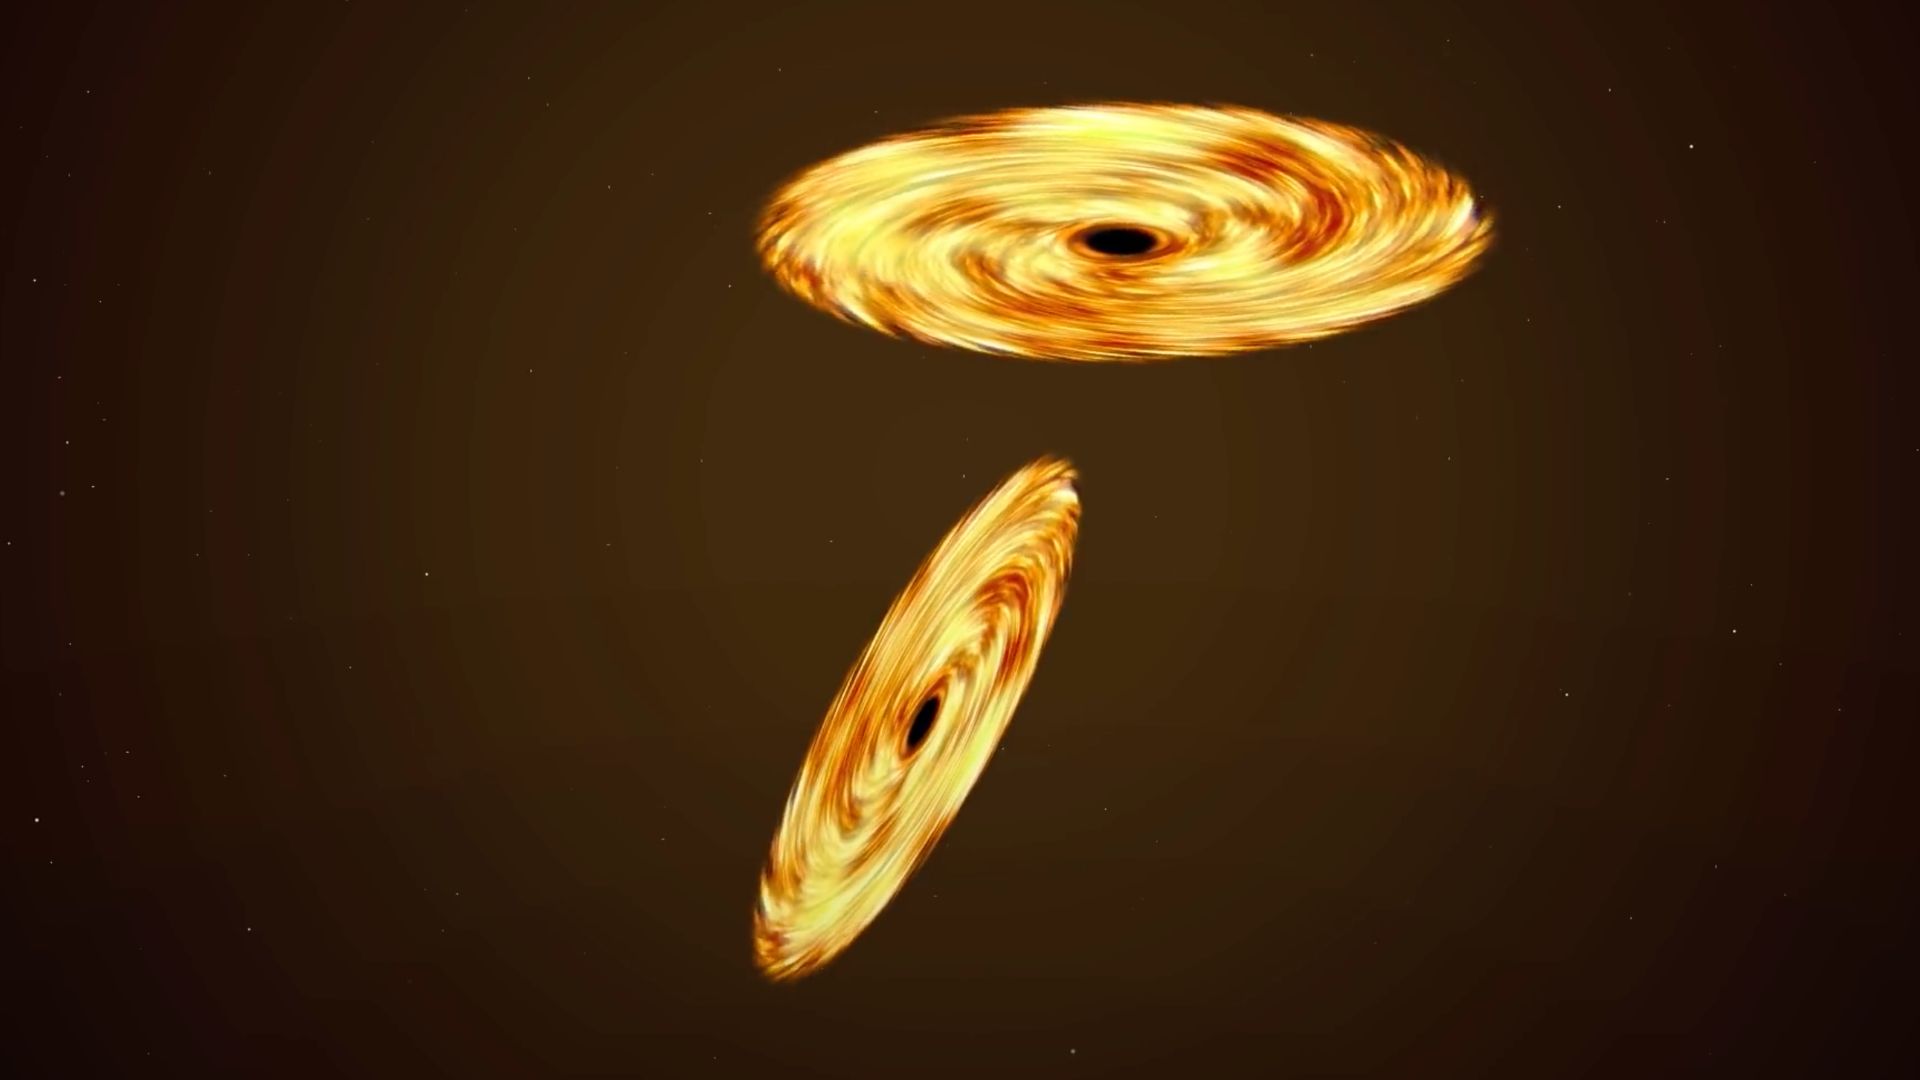 Ce trou noir « supermassif » crée des étoiles derrière lui - Numerama